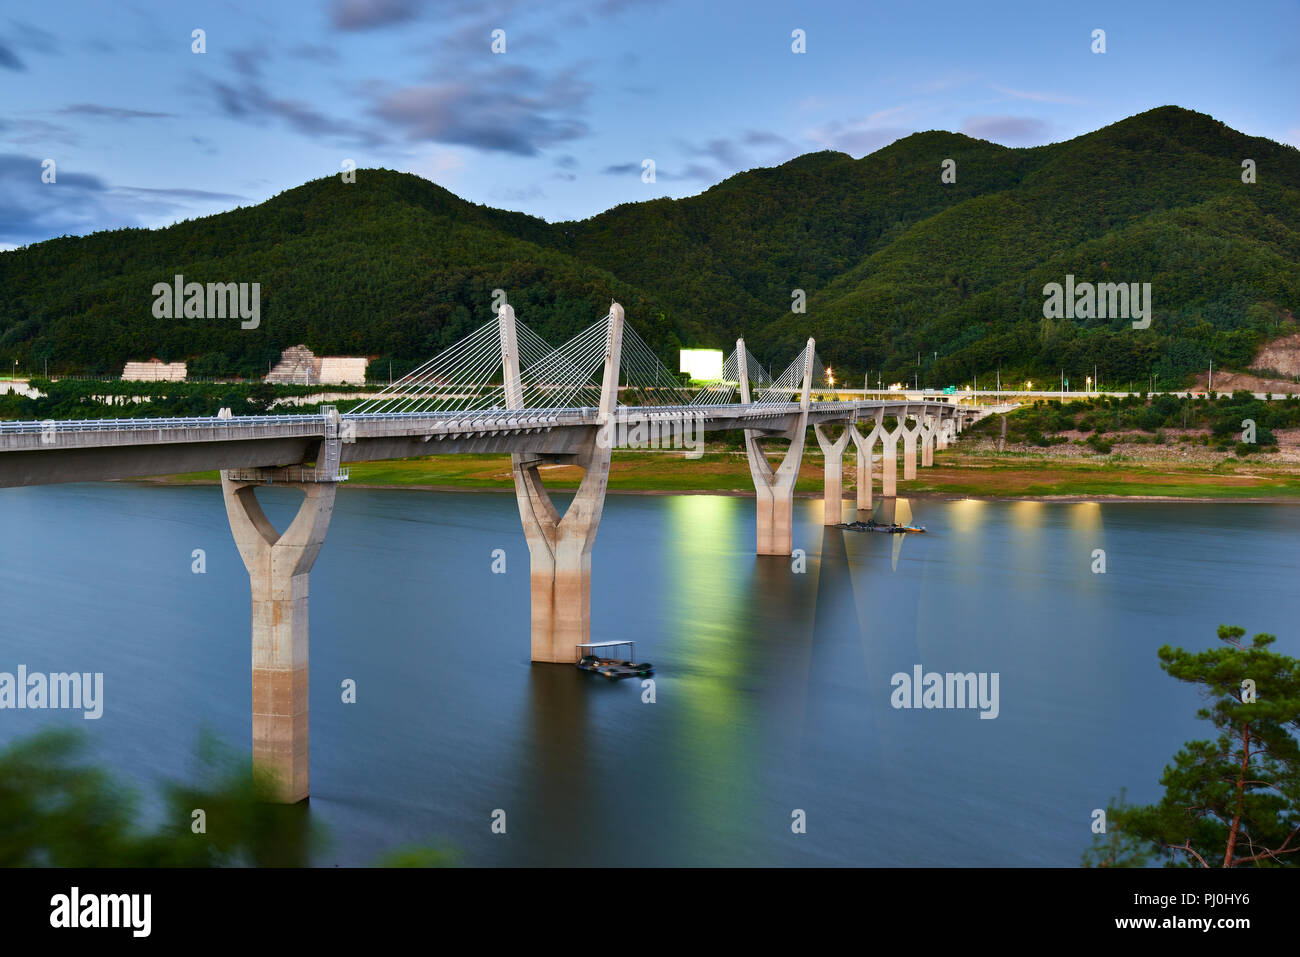 Inje 38 große Brücke in Inje-gun, Gangwon-do, Korea. Stockfoto